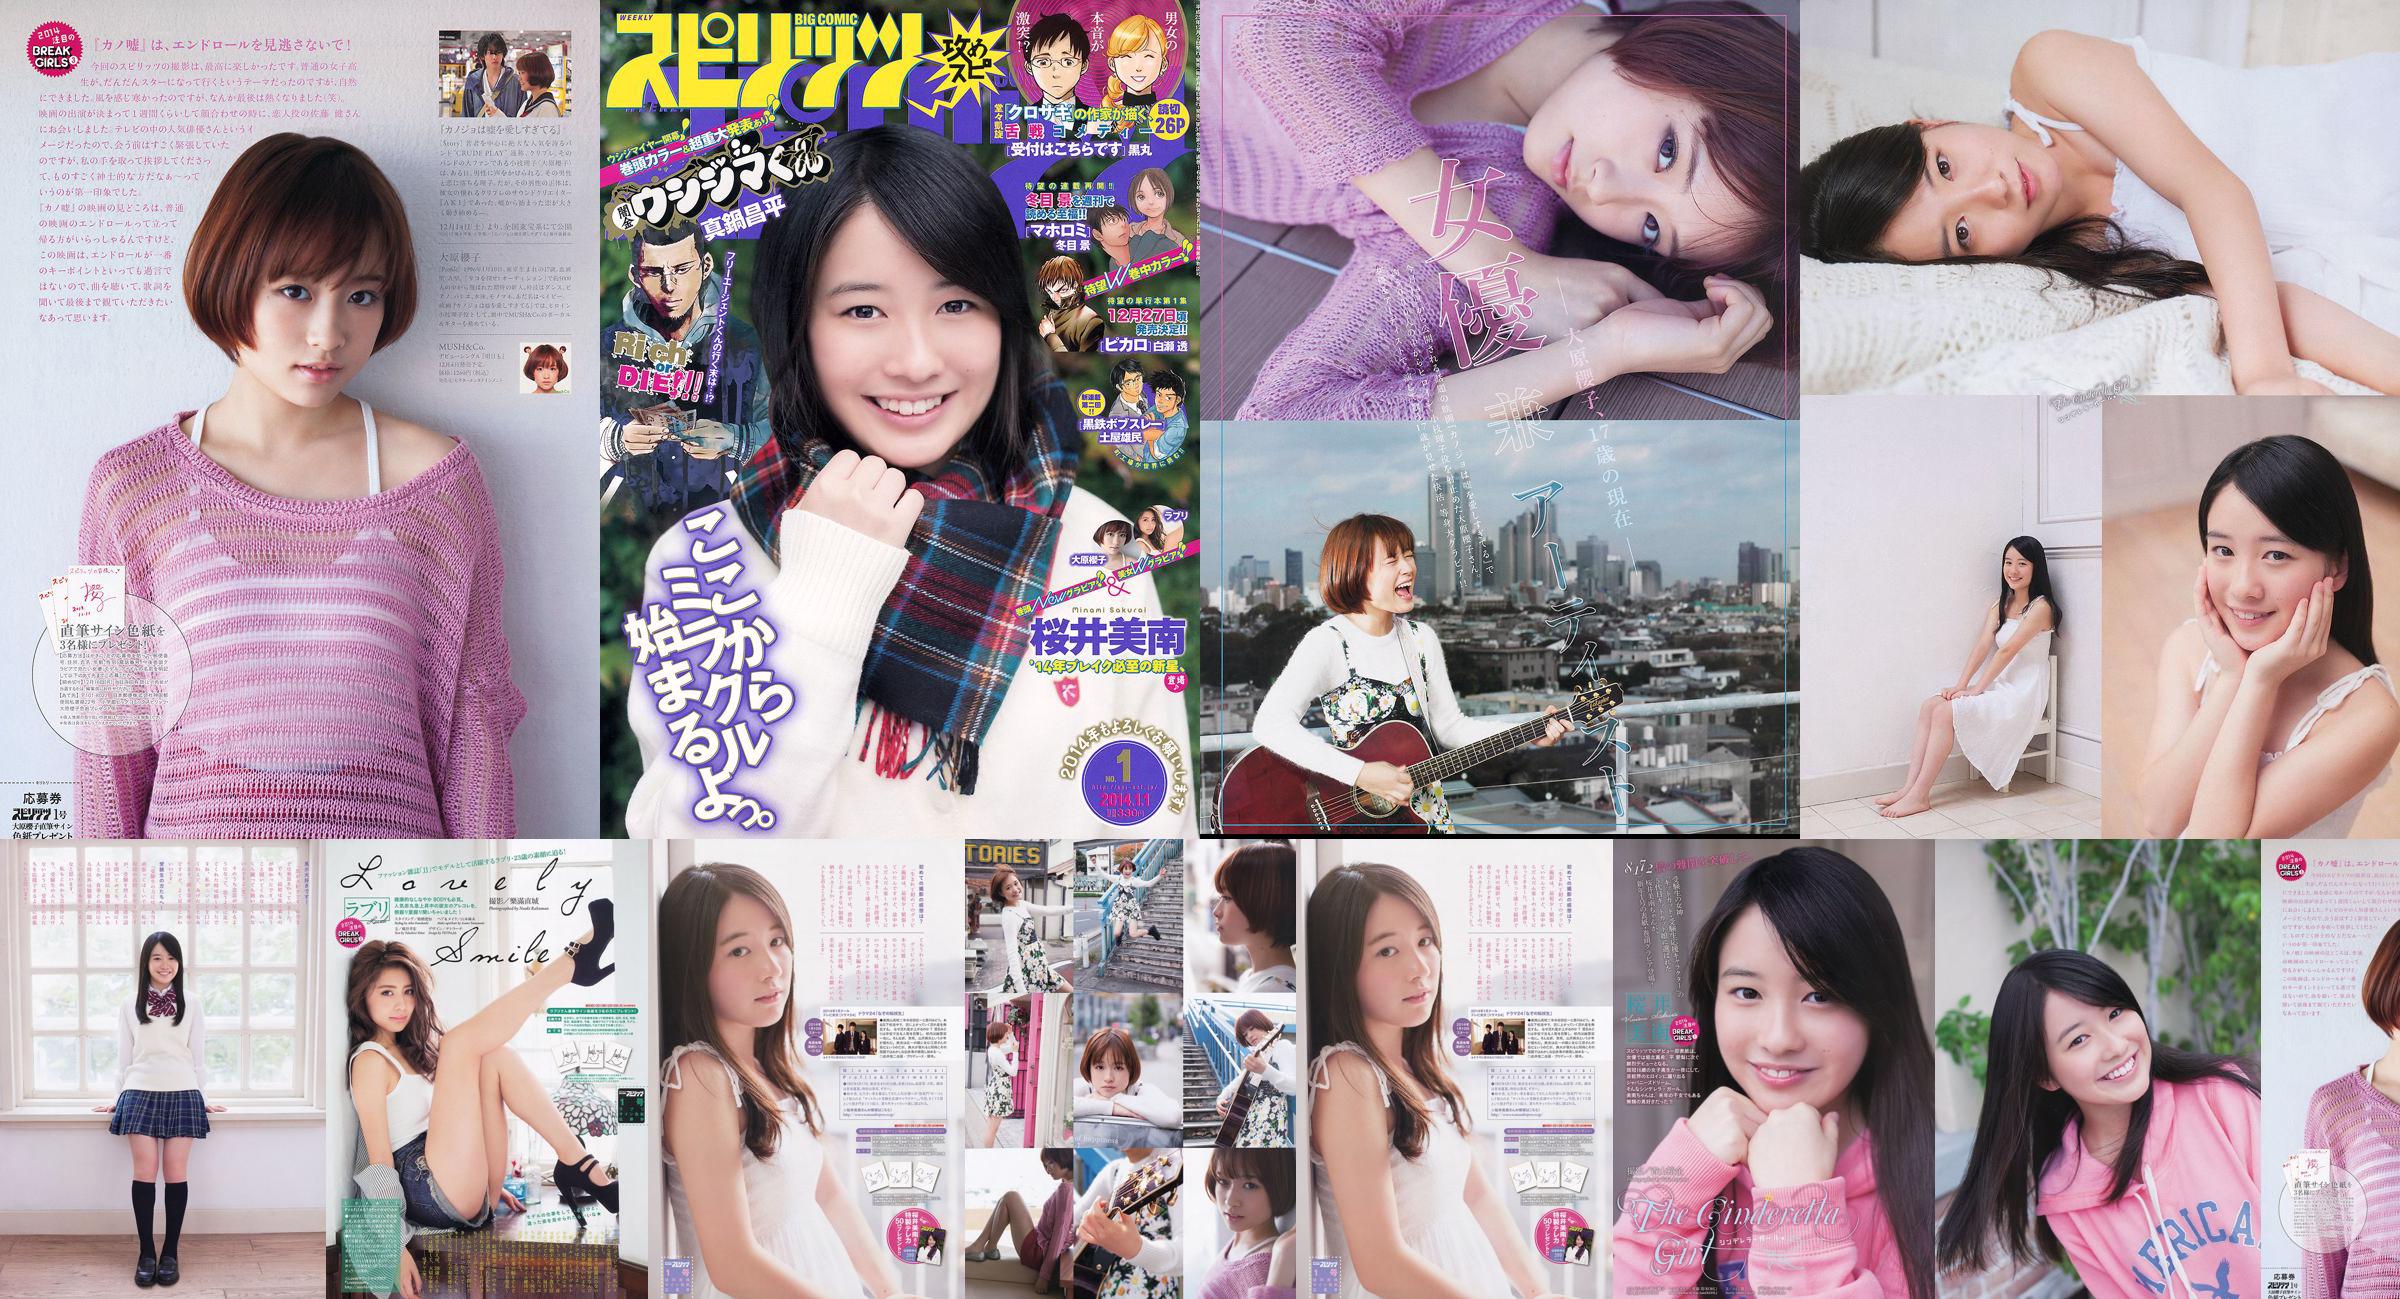 [Wöchentliche große Comic-Geister] Sakurai Minan Ohara Sakurako 2014 No.01 Photo Magazine No.6b9886 Seite 1